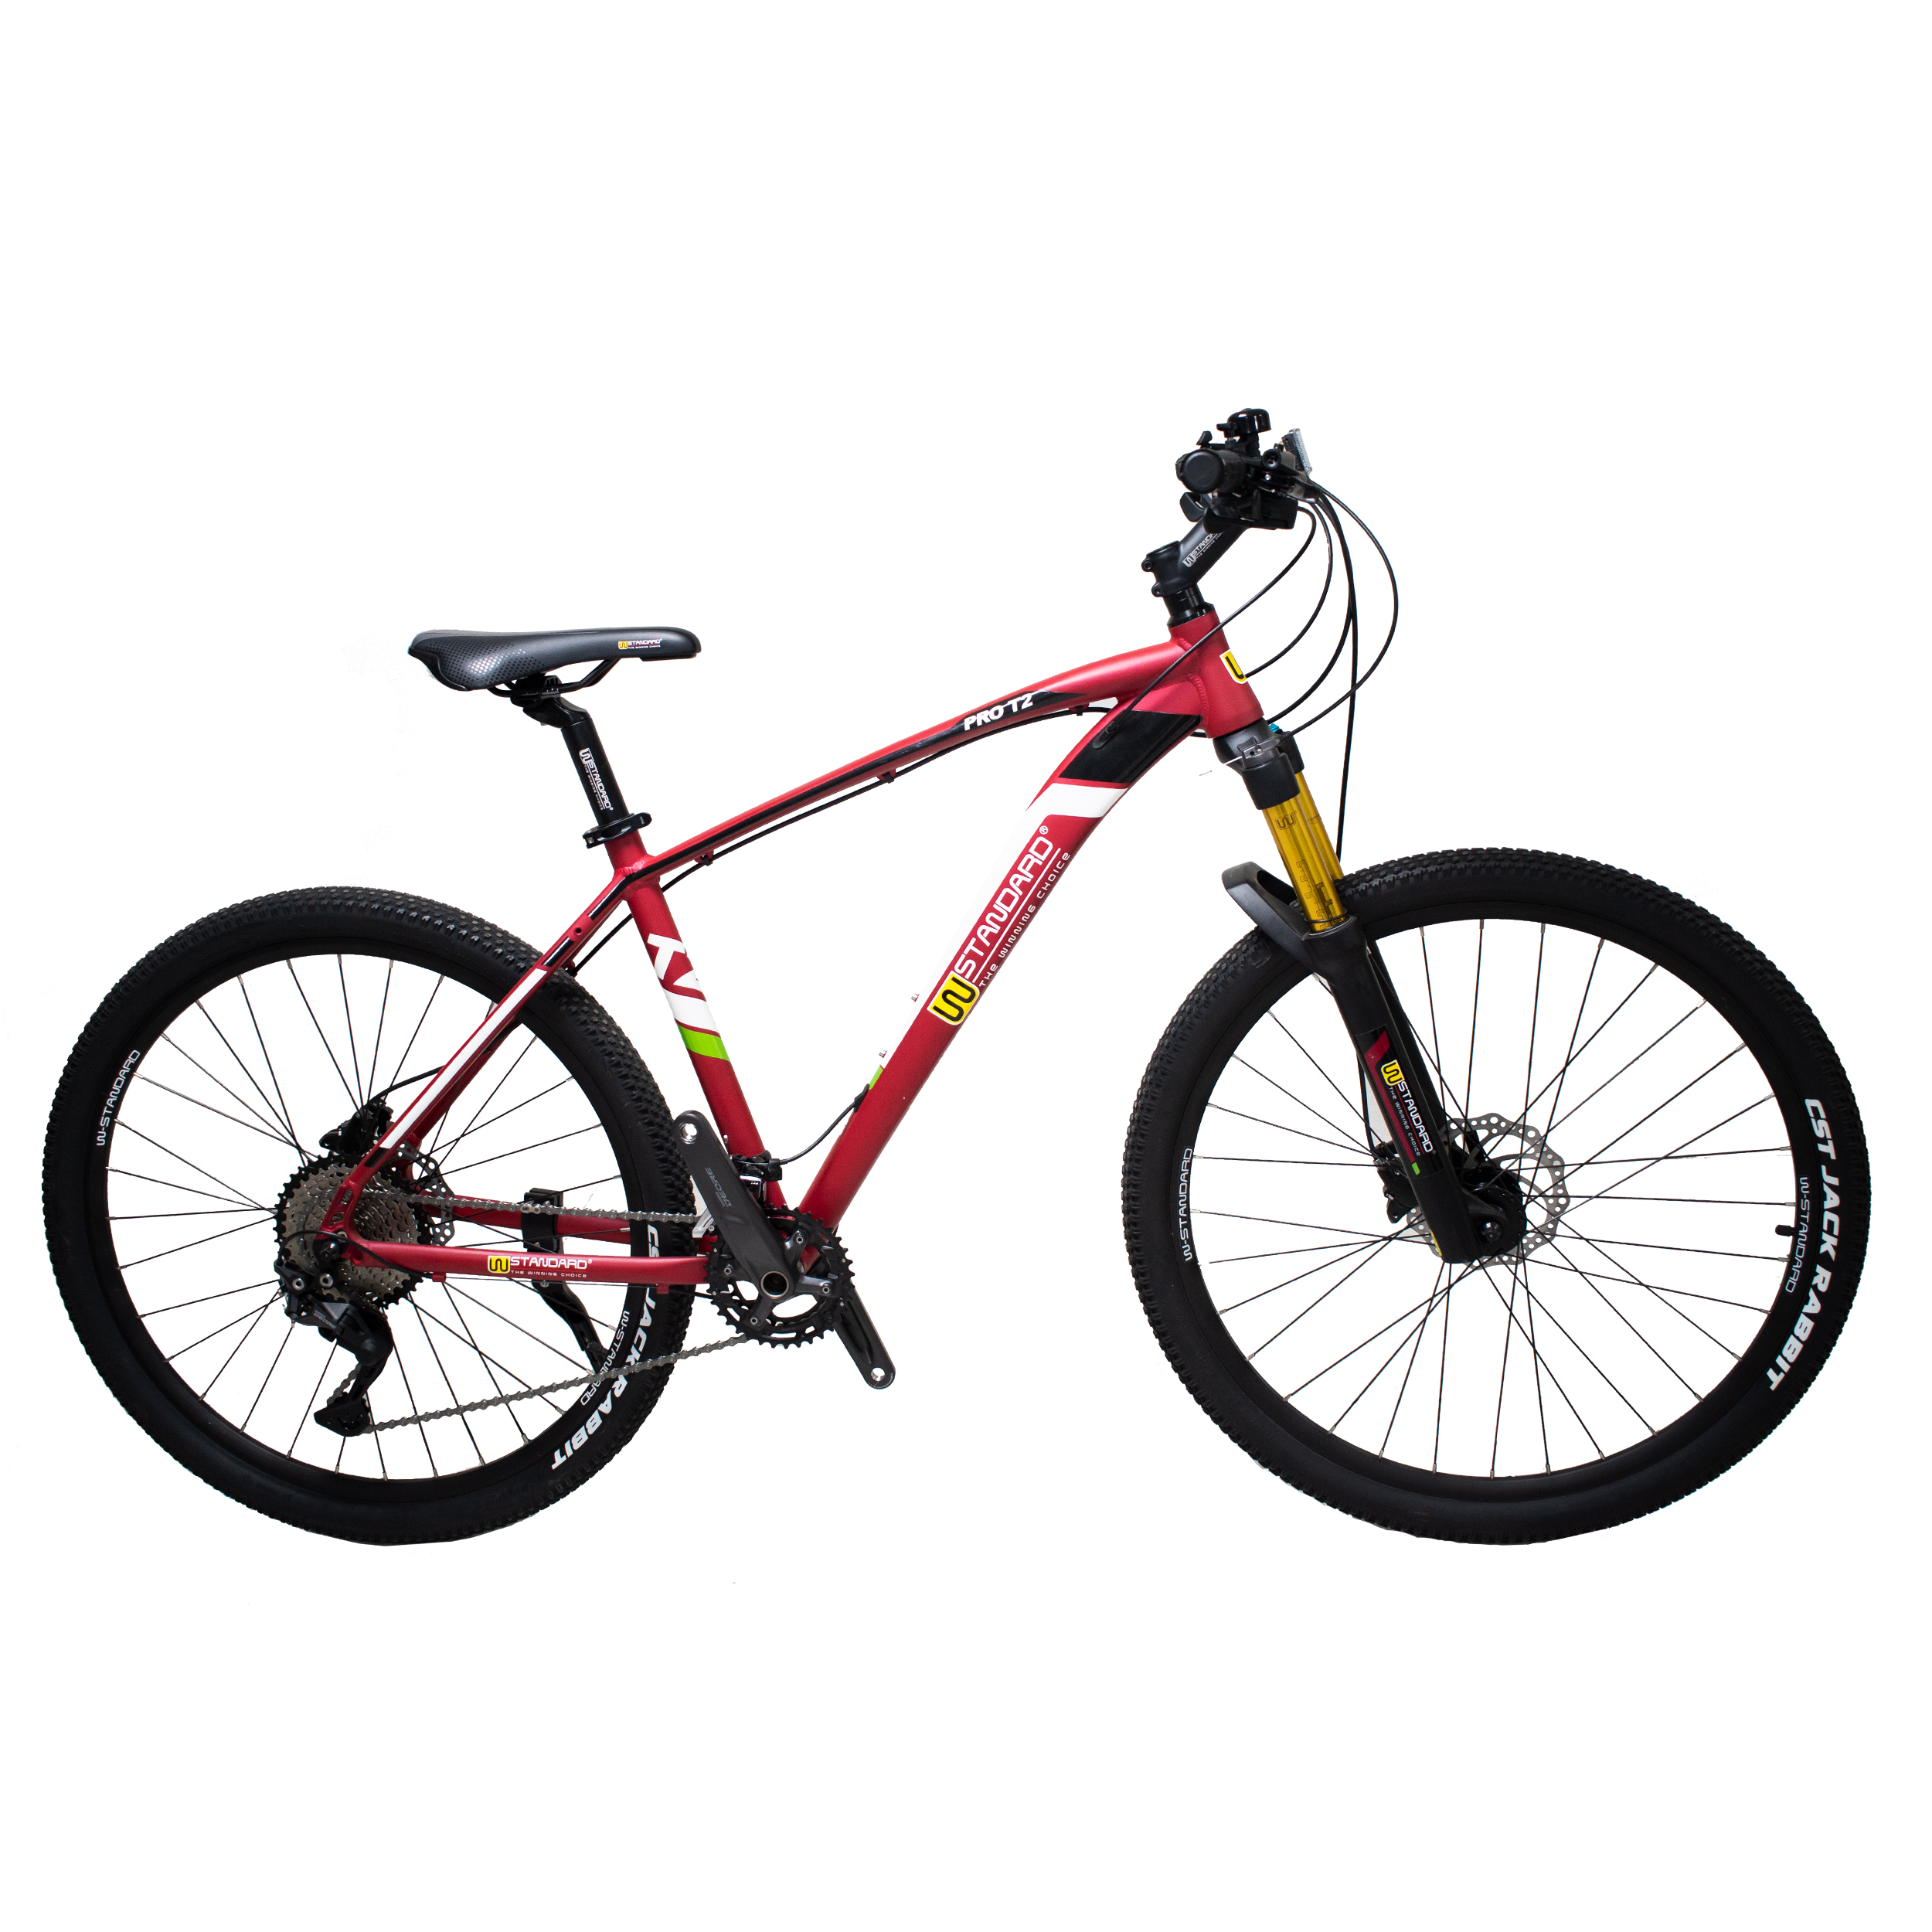 نکته خرید - قیمت روز دوچرخه کوهستان دبلیو استاندارد مدل pro T2 سایز 27.5 خرید